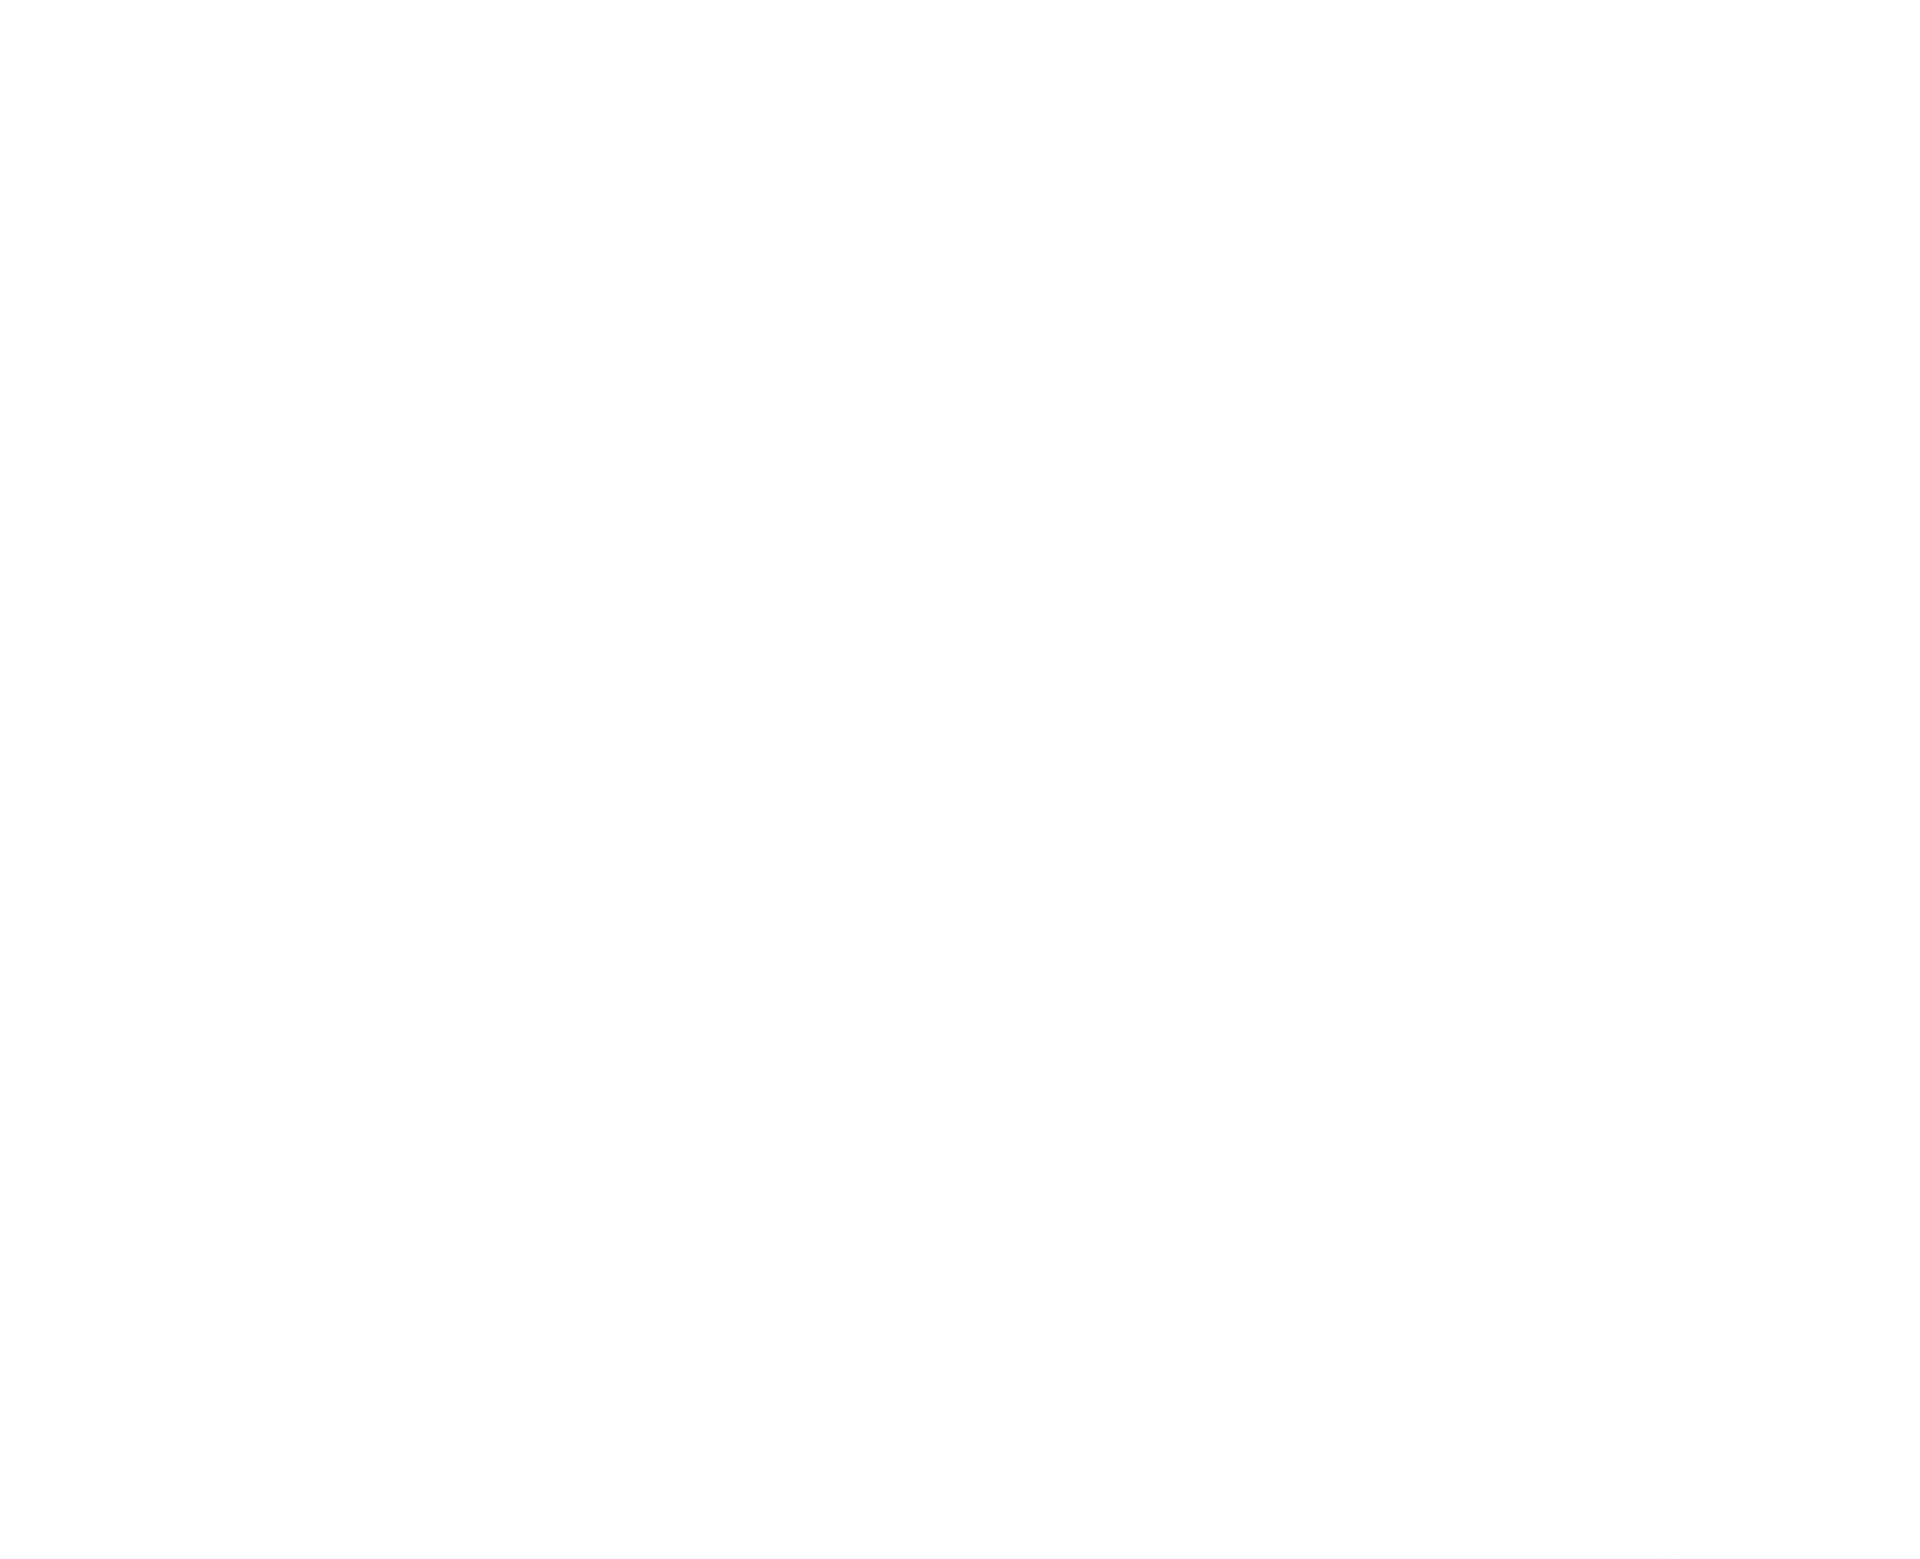 Digital Marketing Agency for Car Rental Companies